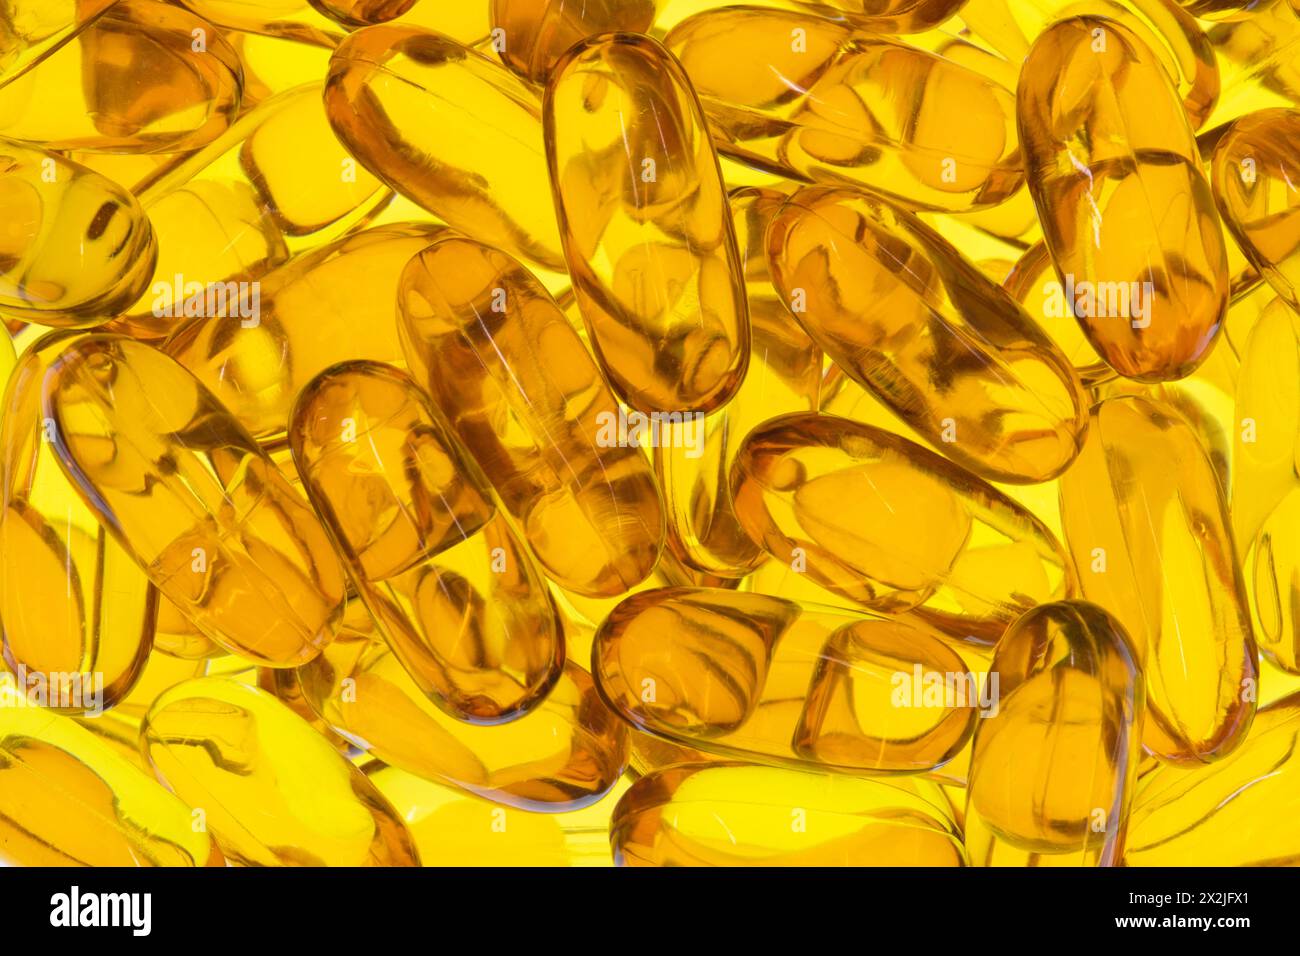 Les capsules d'huile de krill de poisson Omega 3 complètent la santé dispersée dorée jaune rétro-éclairé. Banque D'Images